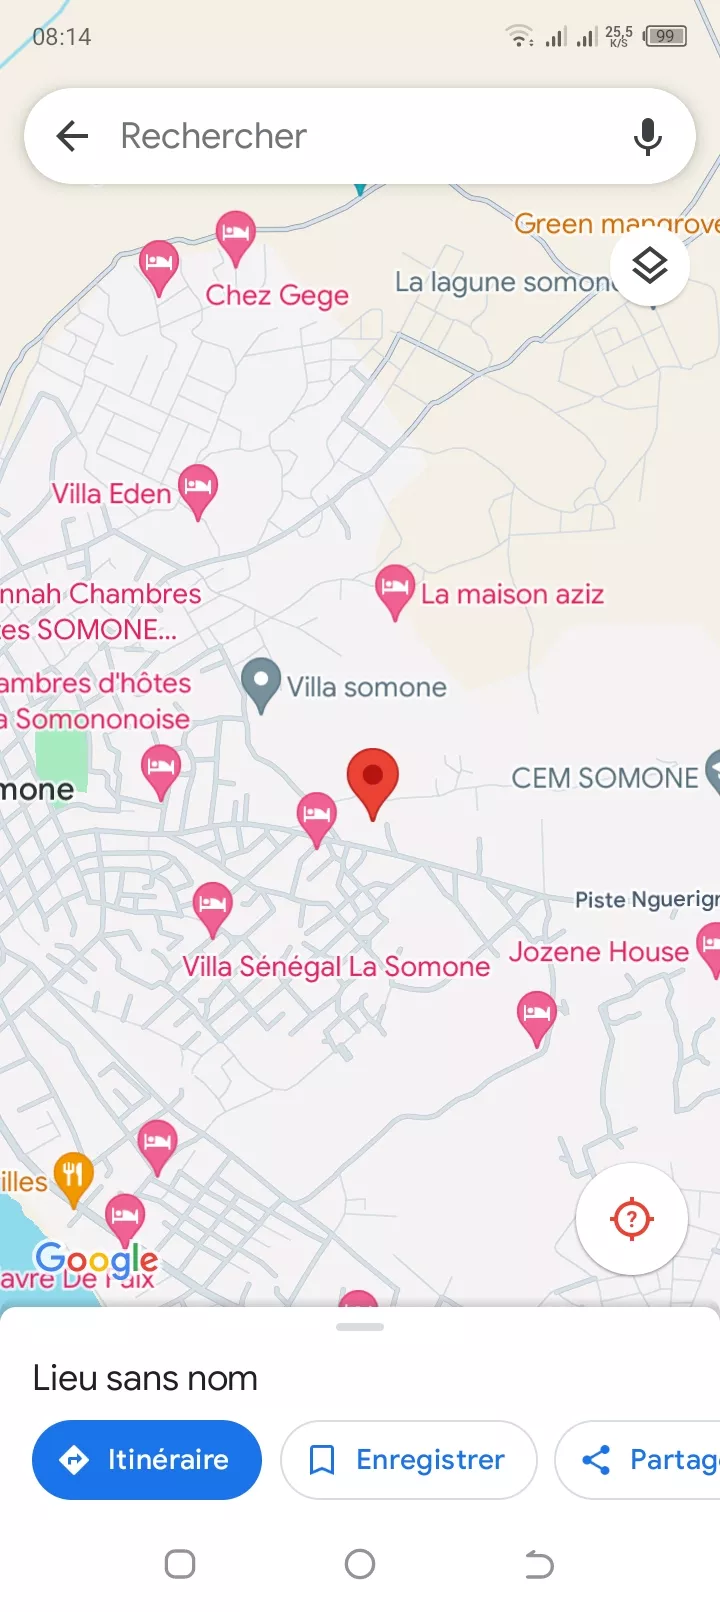 Terrain 300 mètres carrés à Somone à 18000000 - Petites annonces gratuites - Achat et vente à Thiès, Sénégal